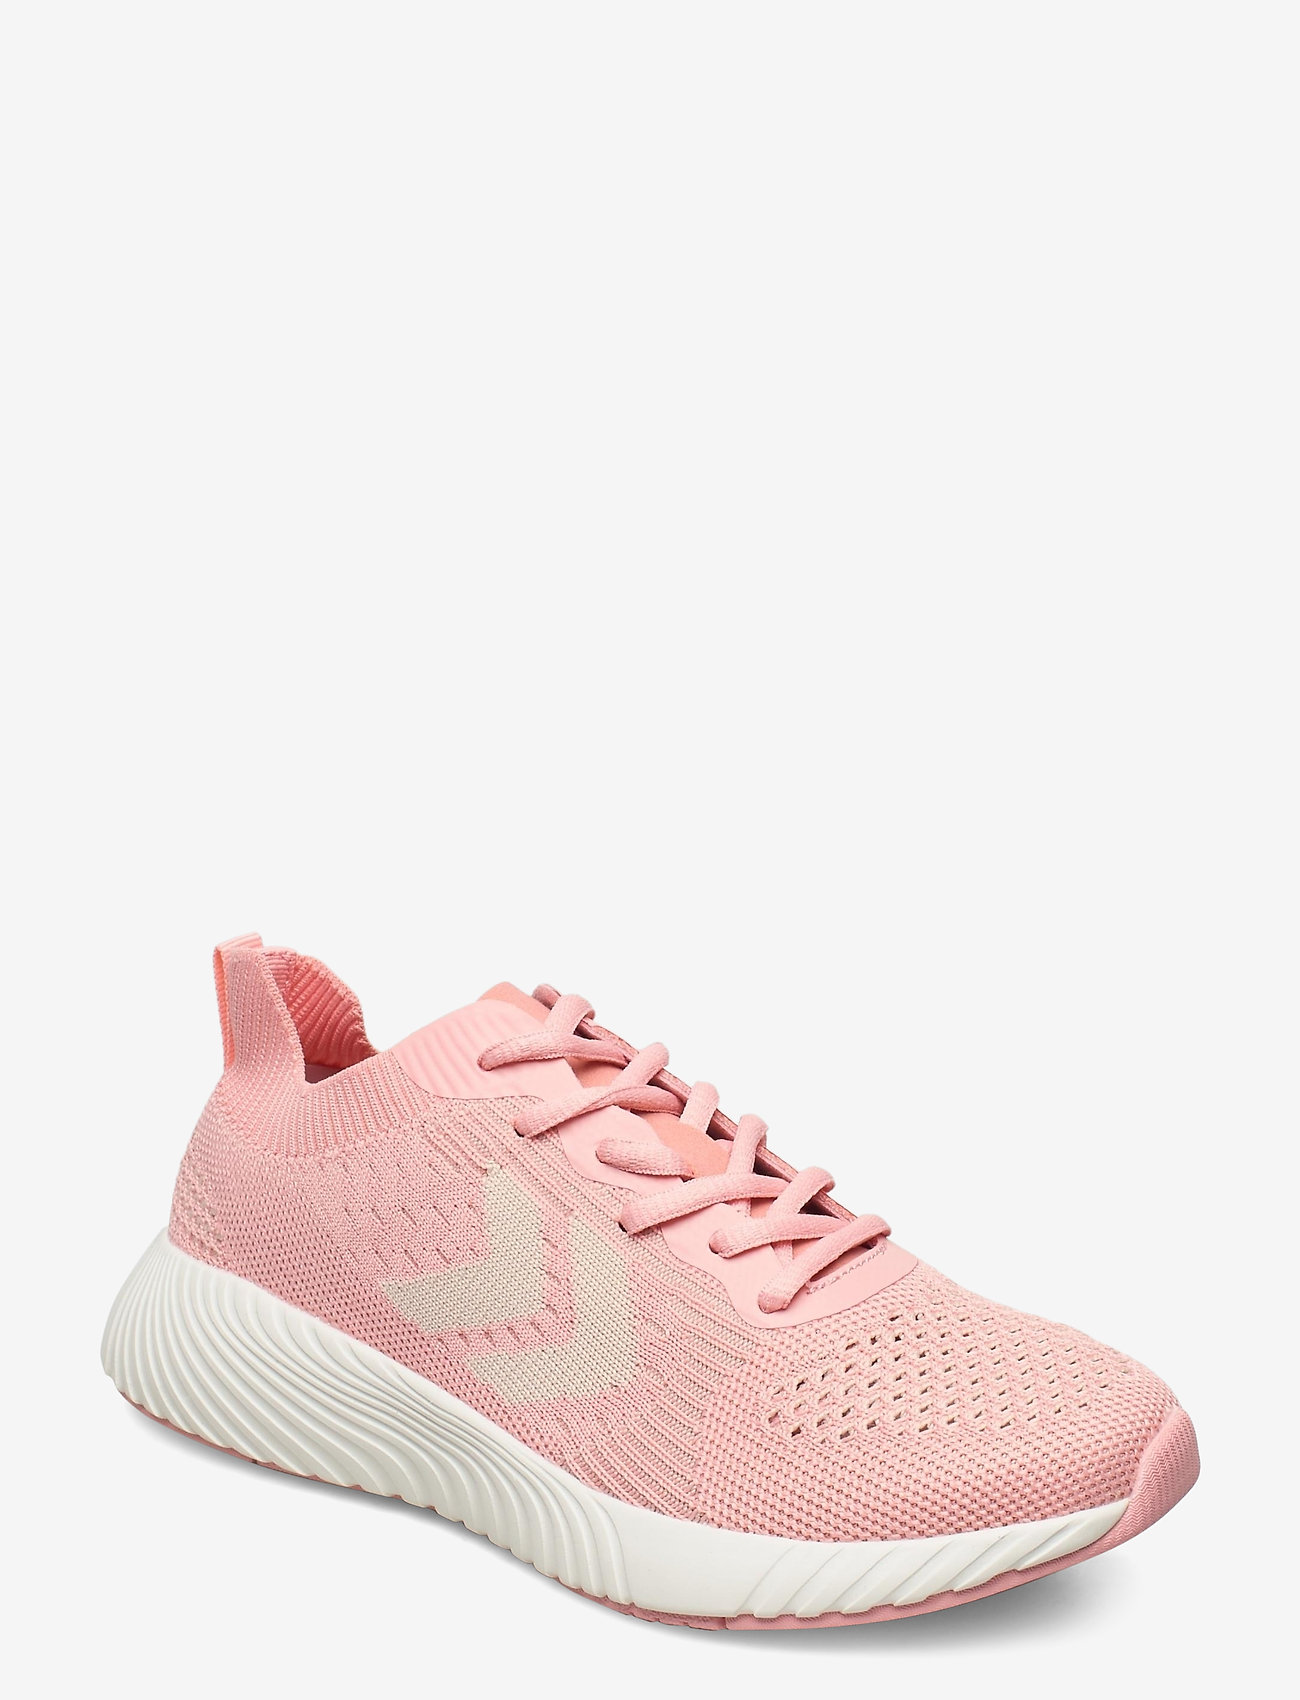 Hummel - TRINITY BREAKER SEAMLESS - lage sneakers - pink - 0